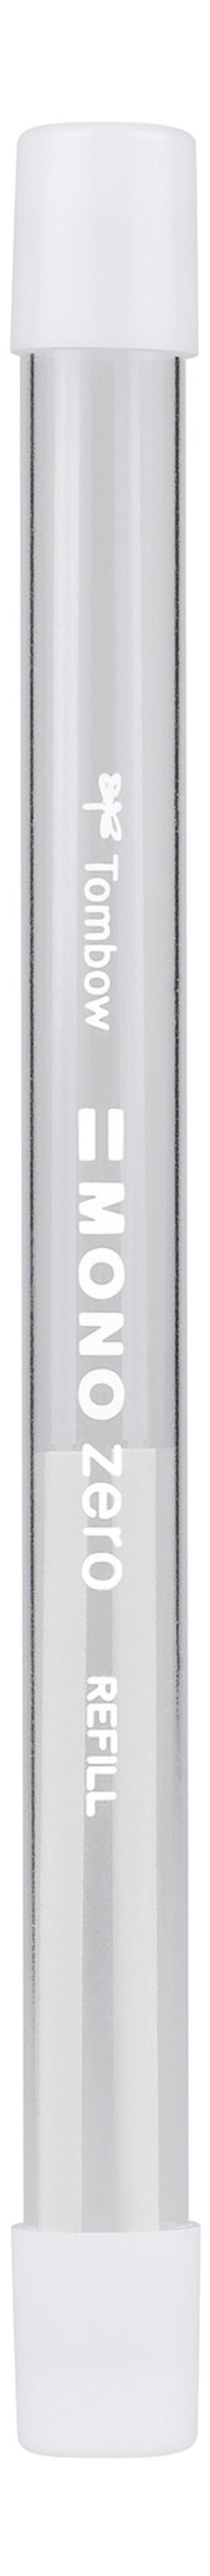 Tombow MONO Zero Refill for Round Tip Eraser White - ER-KUR - ONE CLICK SUPPLIES